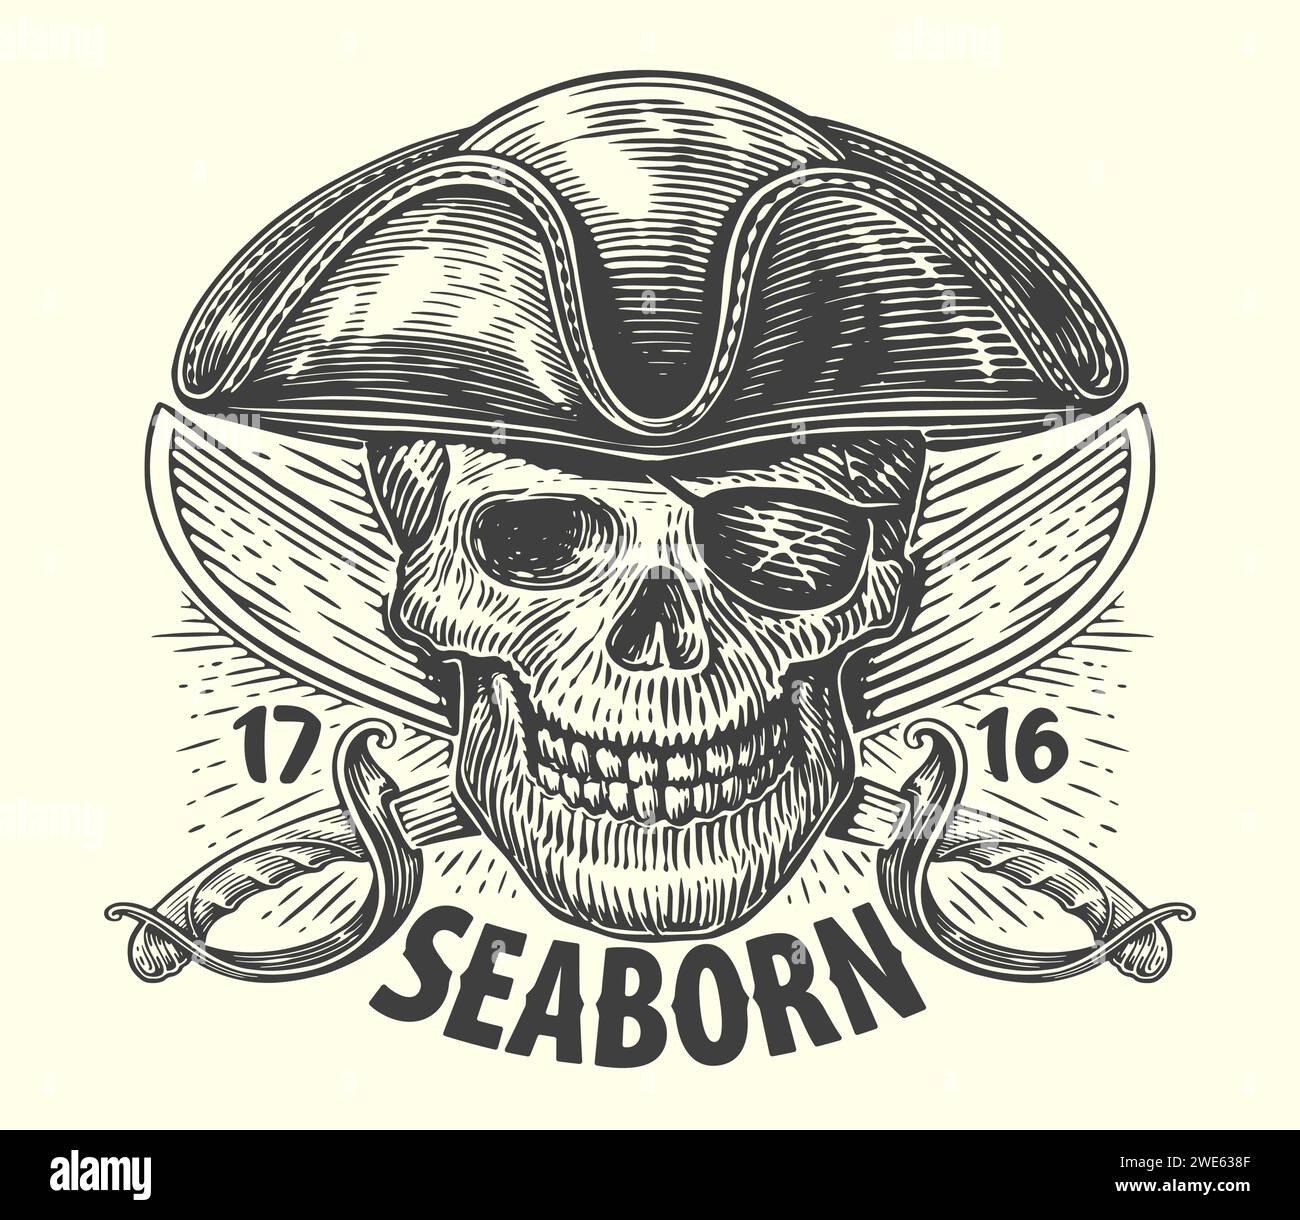 SEABORN. Pirata en sombrero con sables cruzados. Cráneo cabeza boceto vintage ilustración vectorial Ilustración del Vector